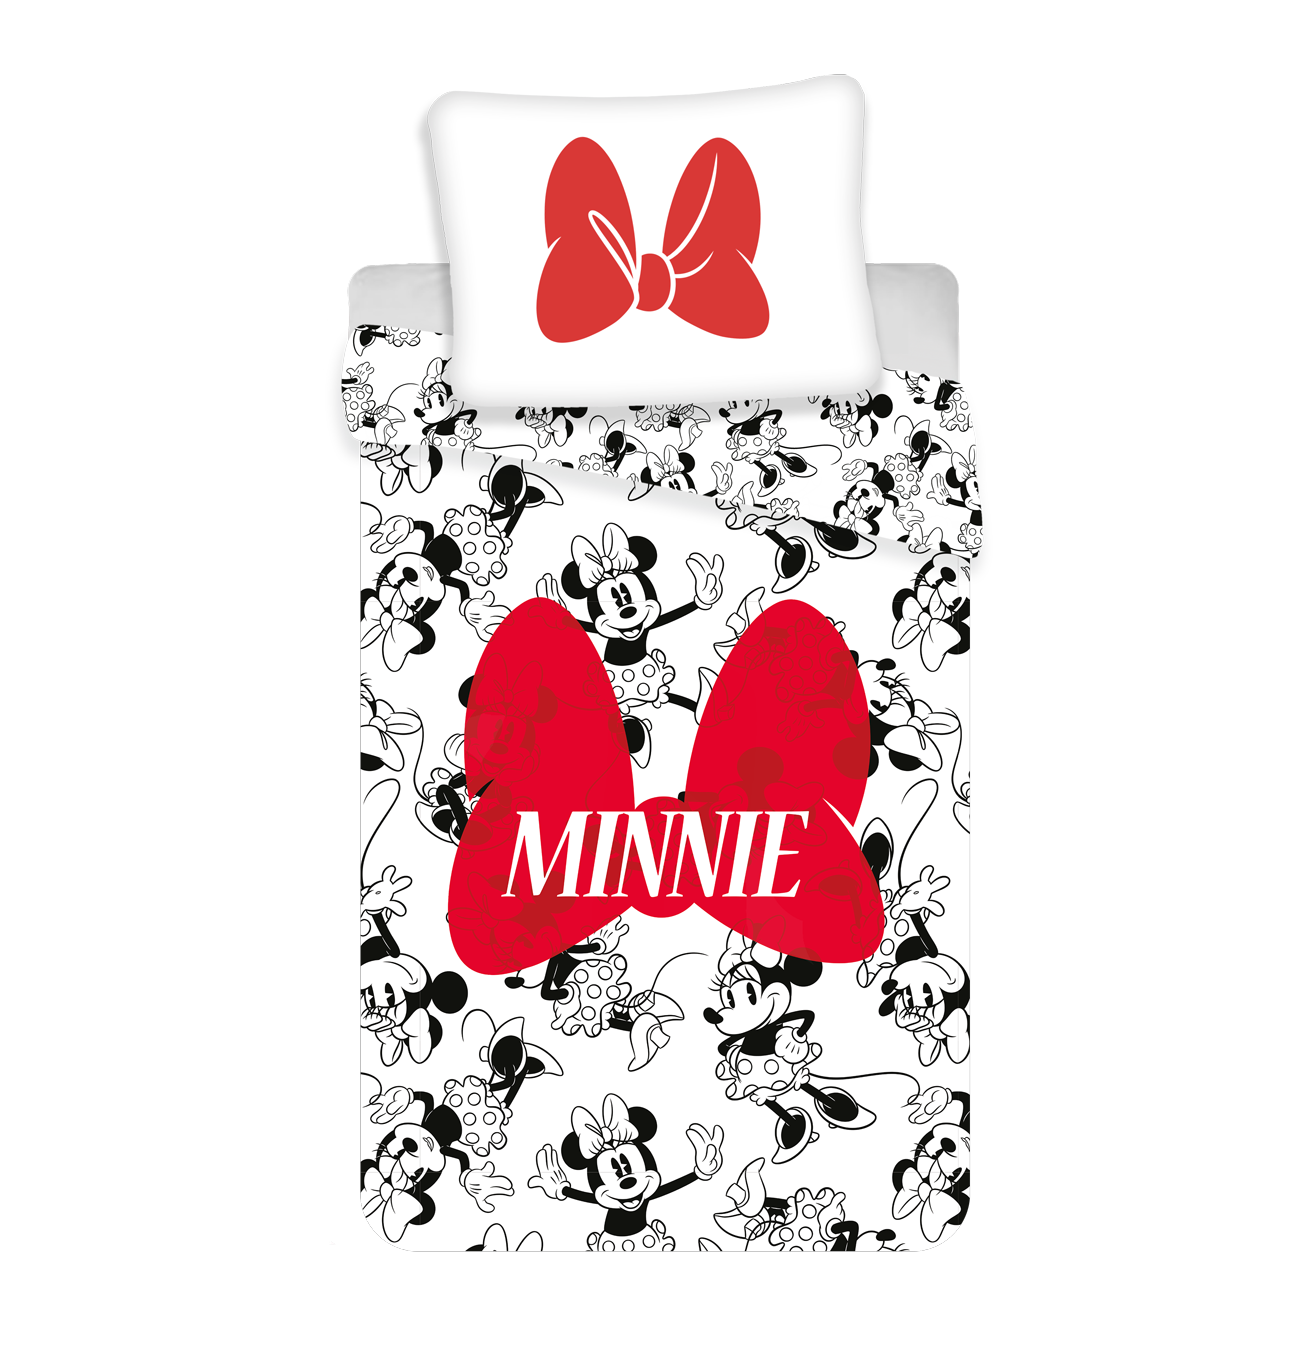 Pekné bavlnené obliečky pre deti Minnie red bow Jerry Fabrics